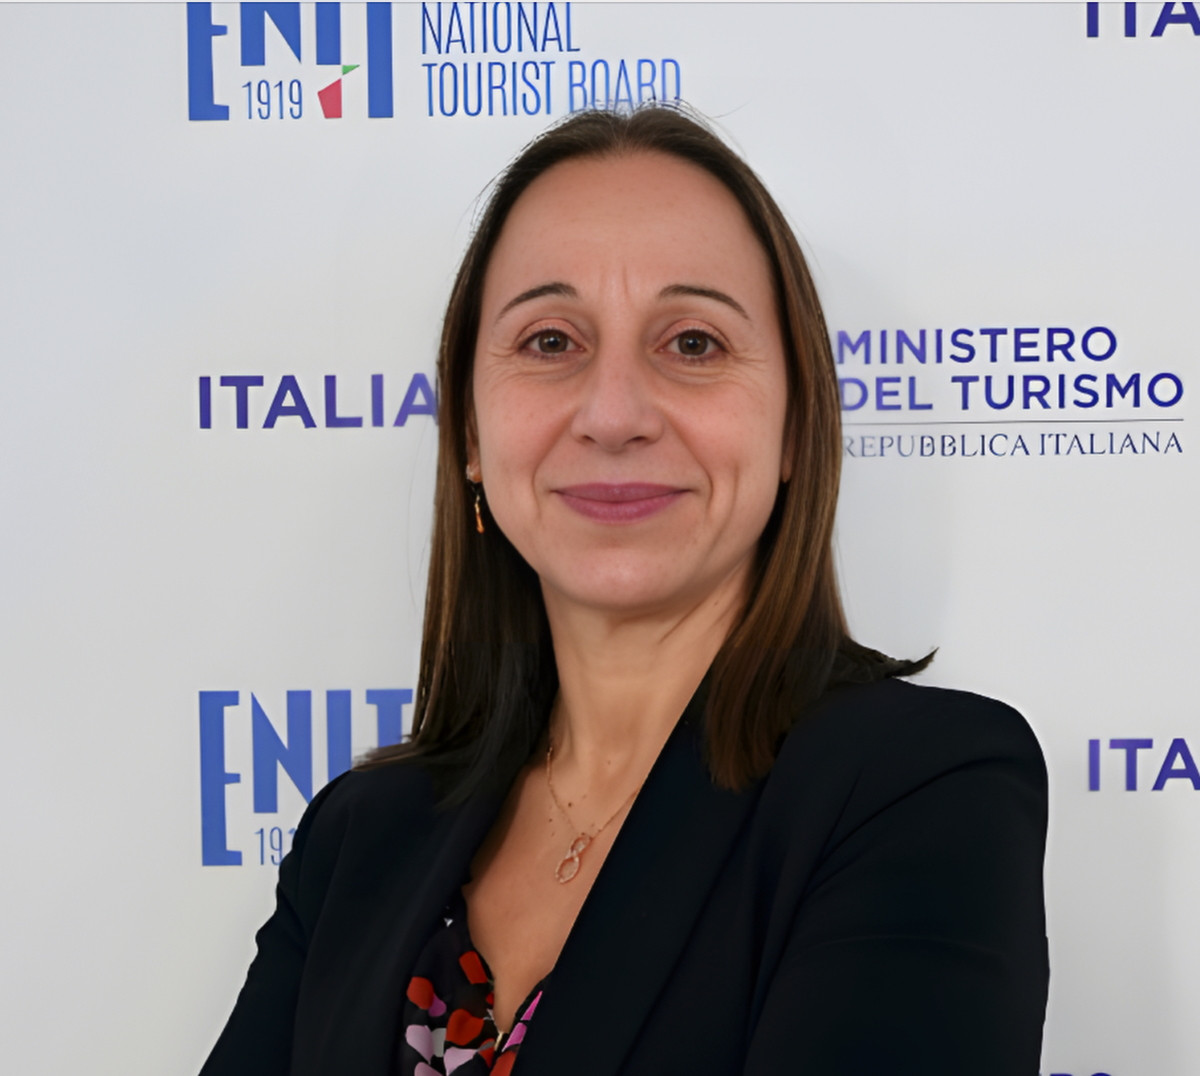 Alessandra Priante deja su cargo de la OMT en Madrid para presidir el ENIT